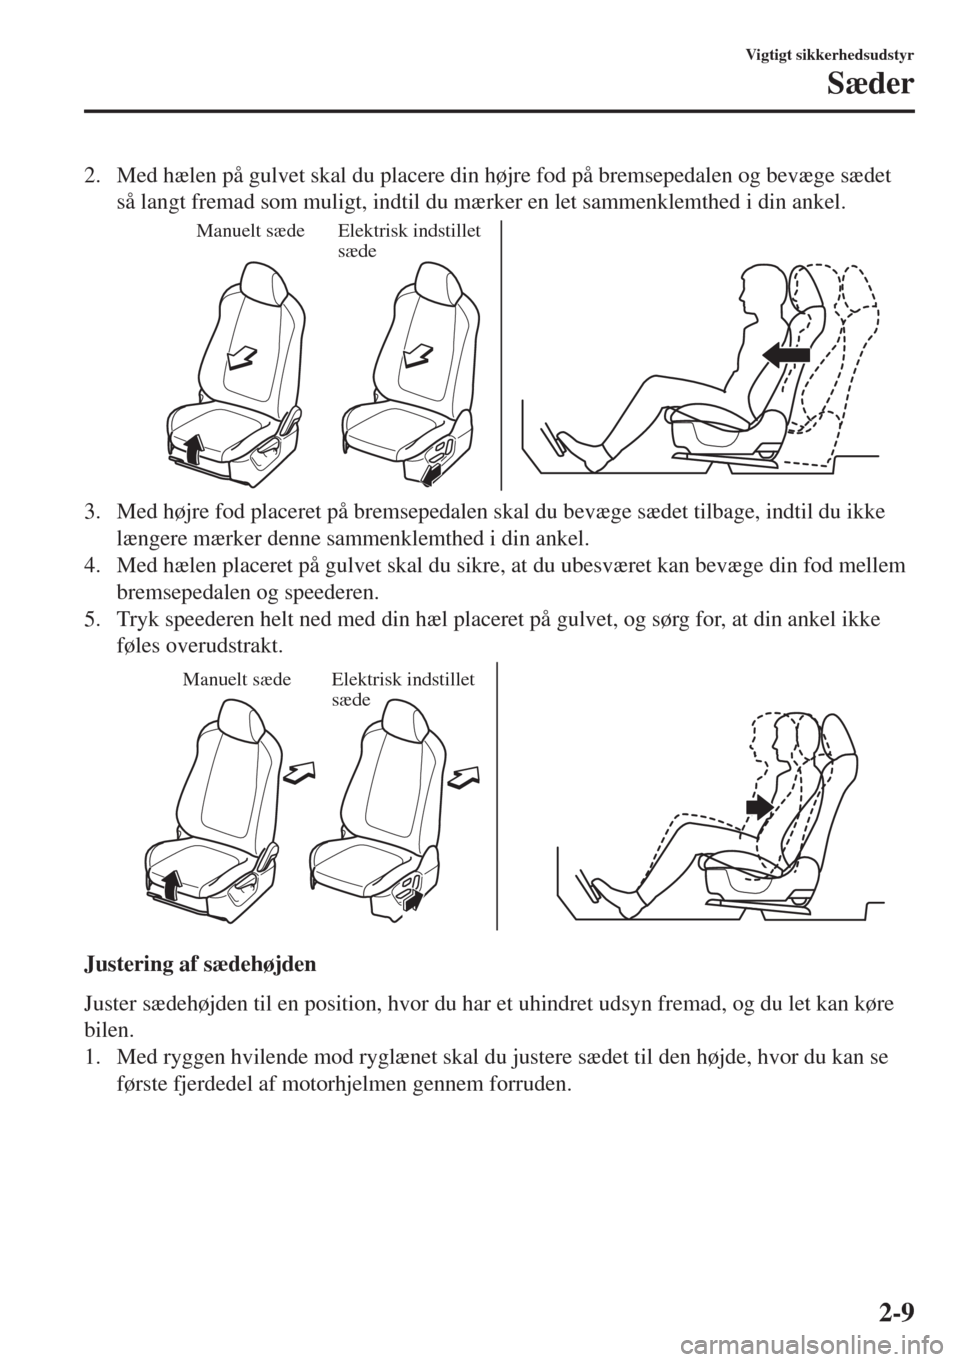 MAZDA MODEL 6 2018  Instruktionsbog (in Danish) 2. Med hælen på gulvet skal du placere din højre fod på bremsepedalen og bevæge sædet
så langt fremad som muligt, indtil du mærker en let sammenklemthed i din ankel.
Manuelt sædeElektrisk ind